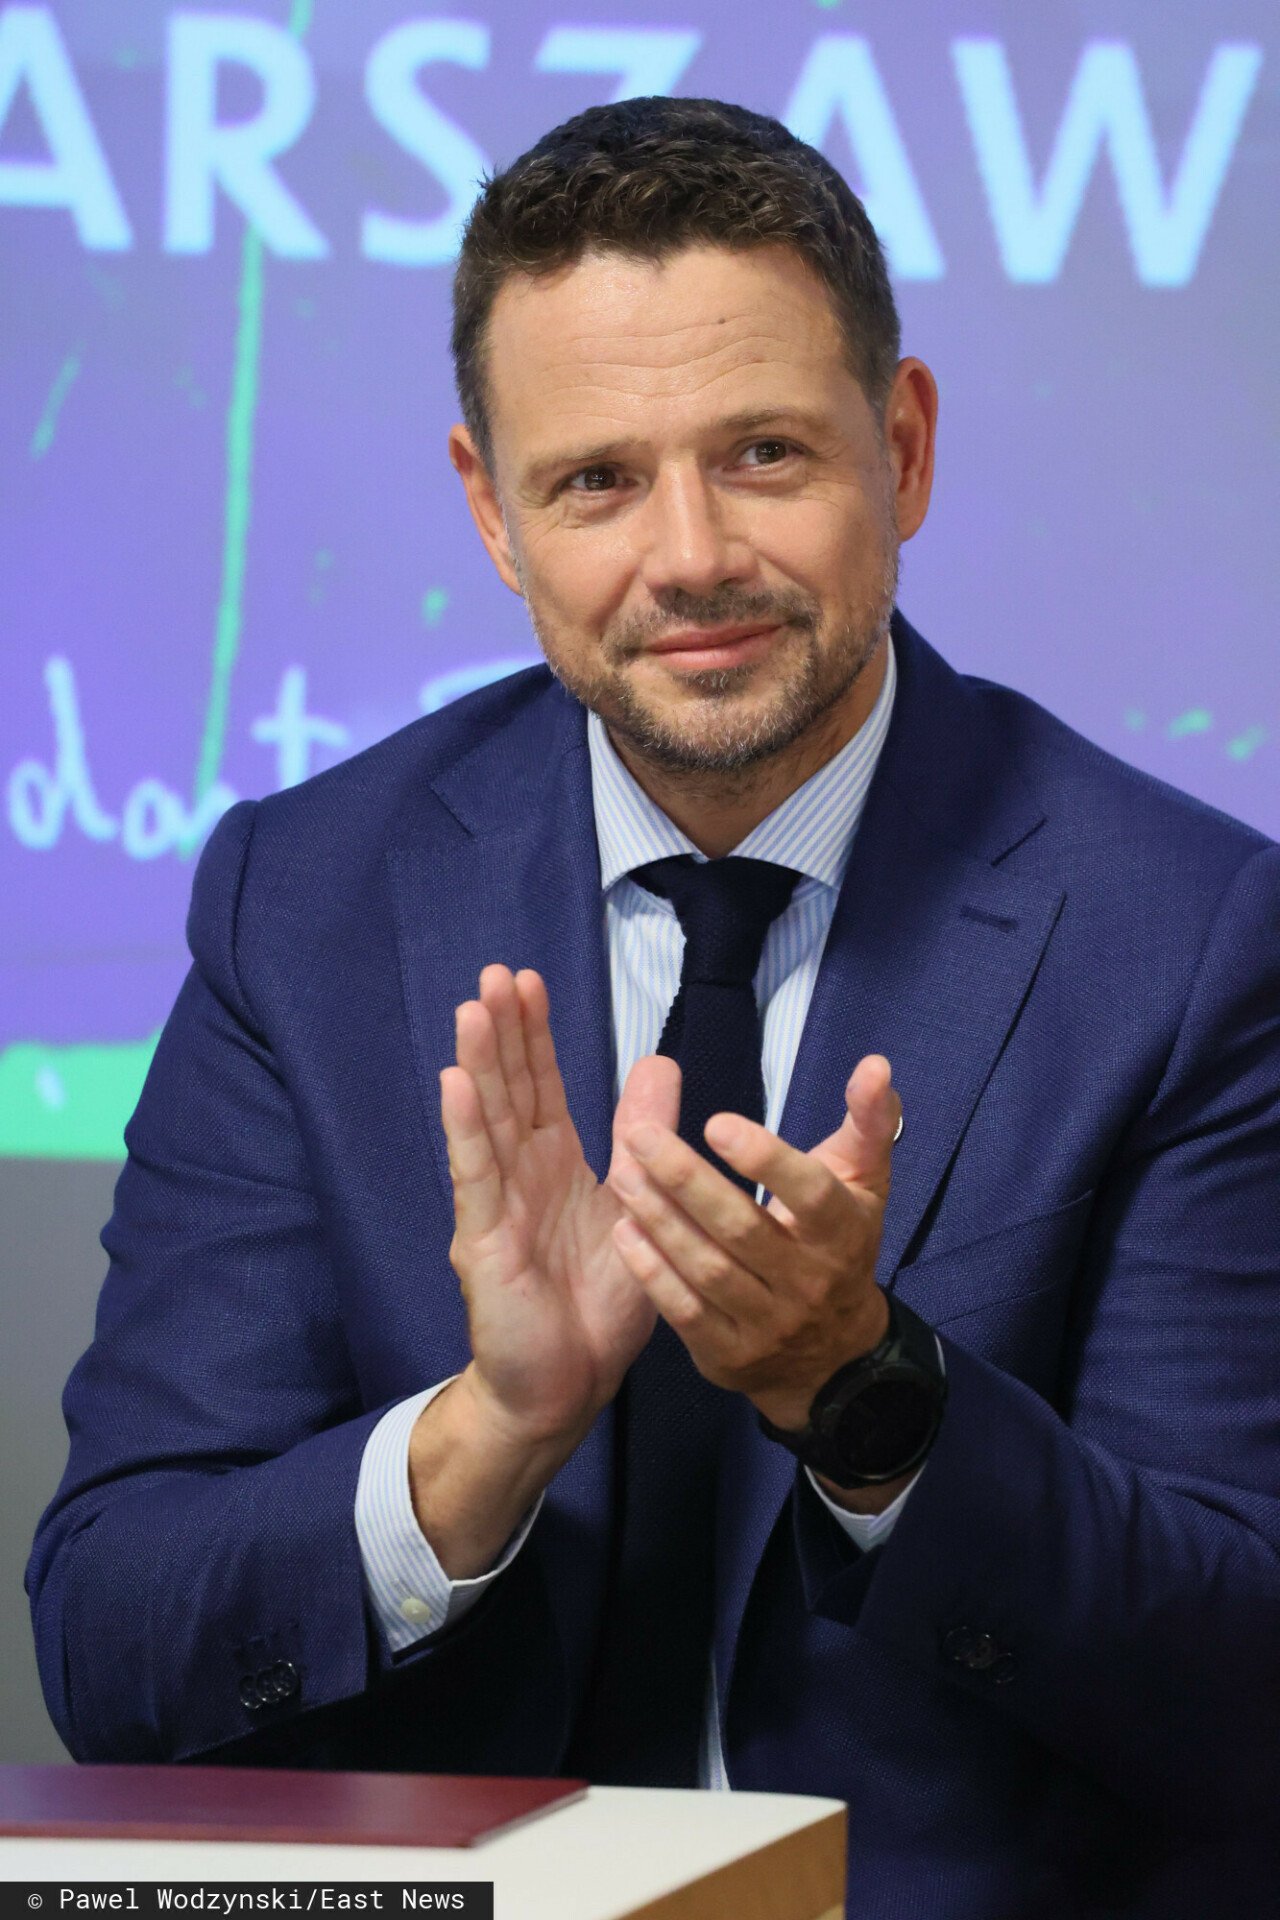 Klaszczący Rafał Trzaskowski w garniturze